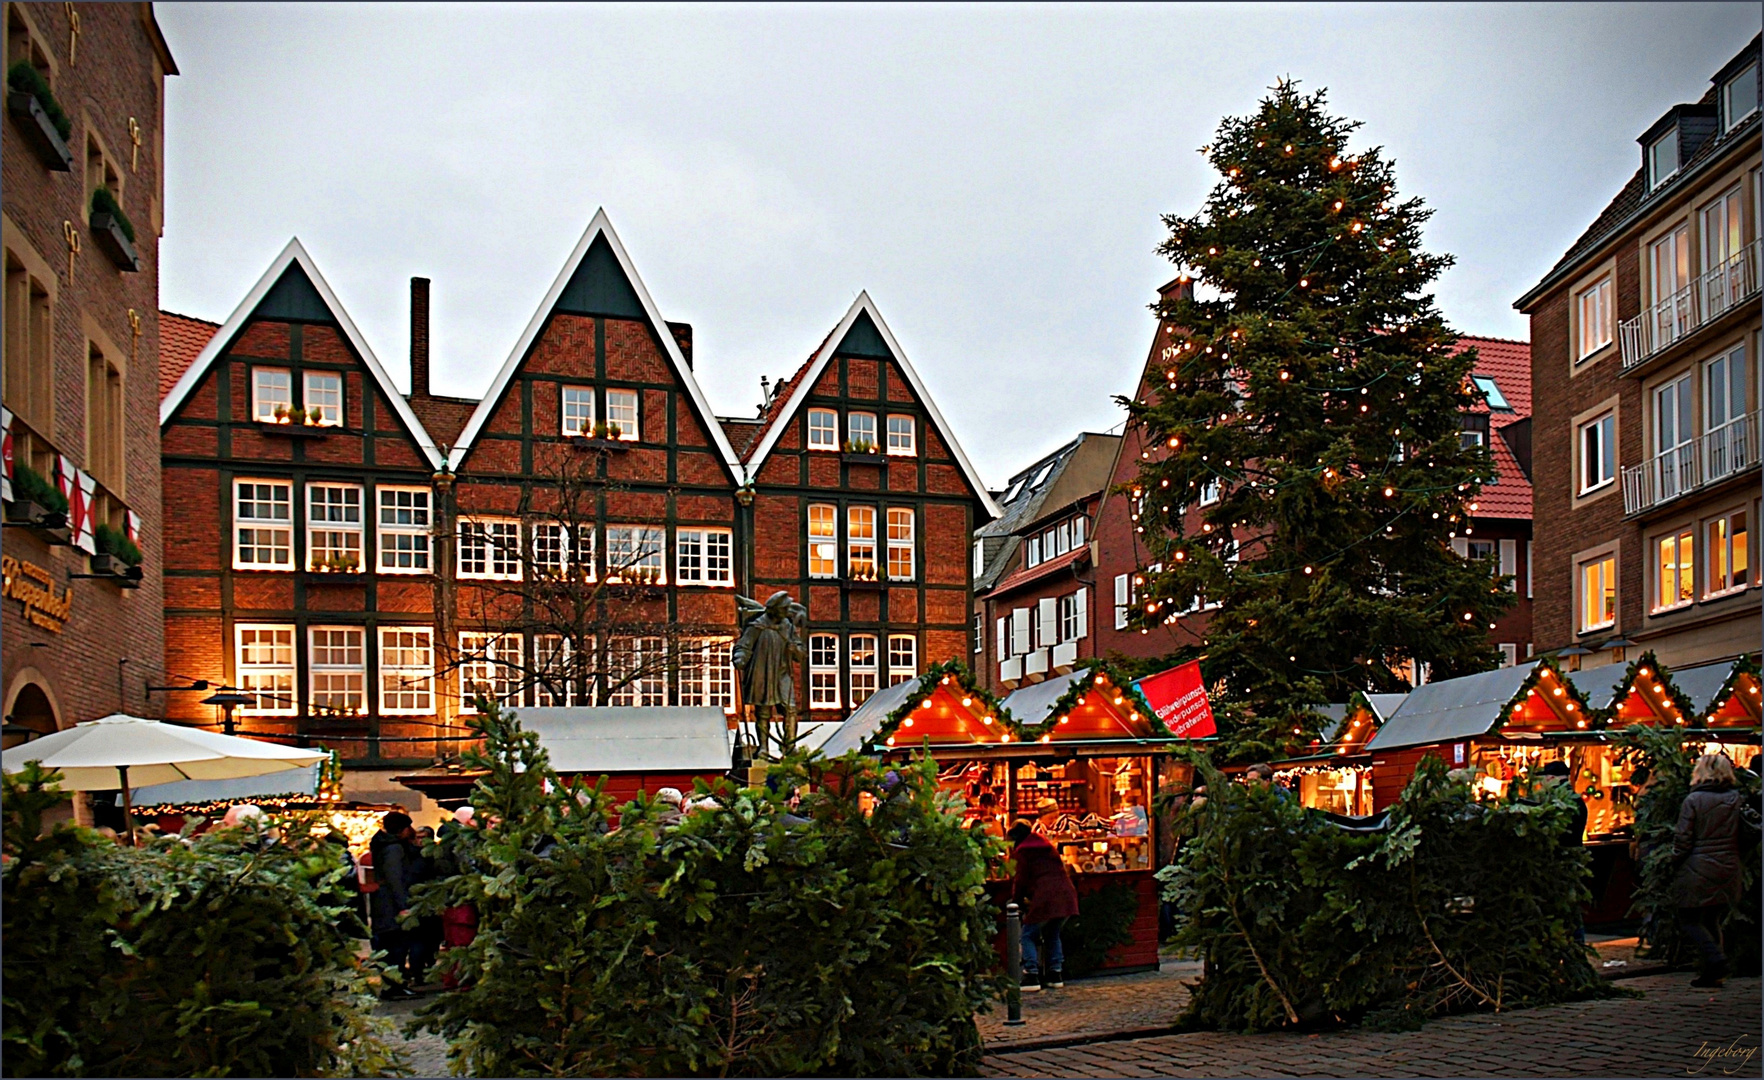 # Kiepenkerl-Weihnachtsmarkt #